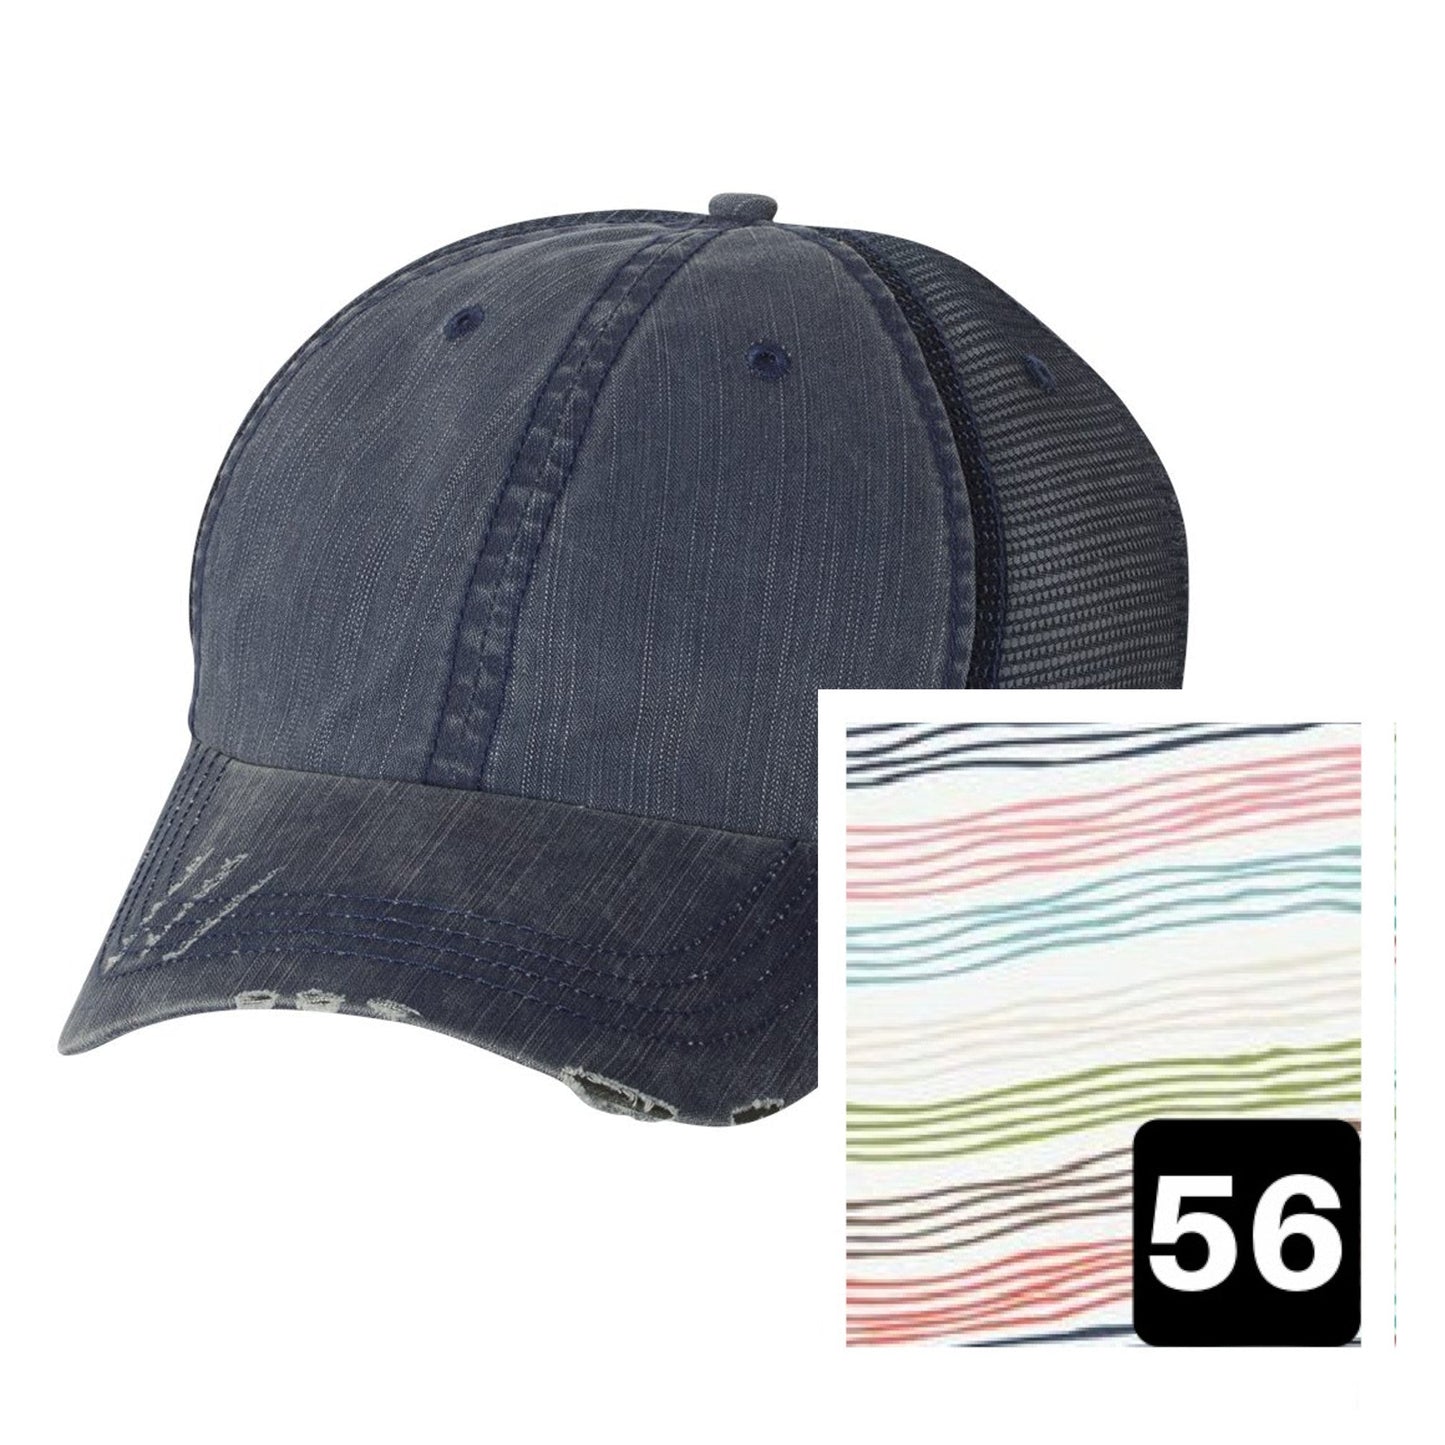 Idaho Hat | Navy Distressed Trucker Cap | Many Fabric Choices